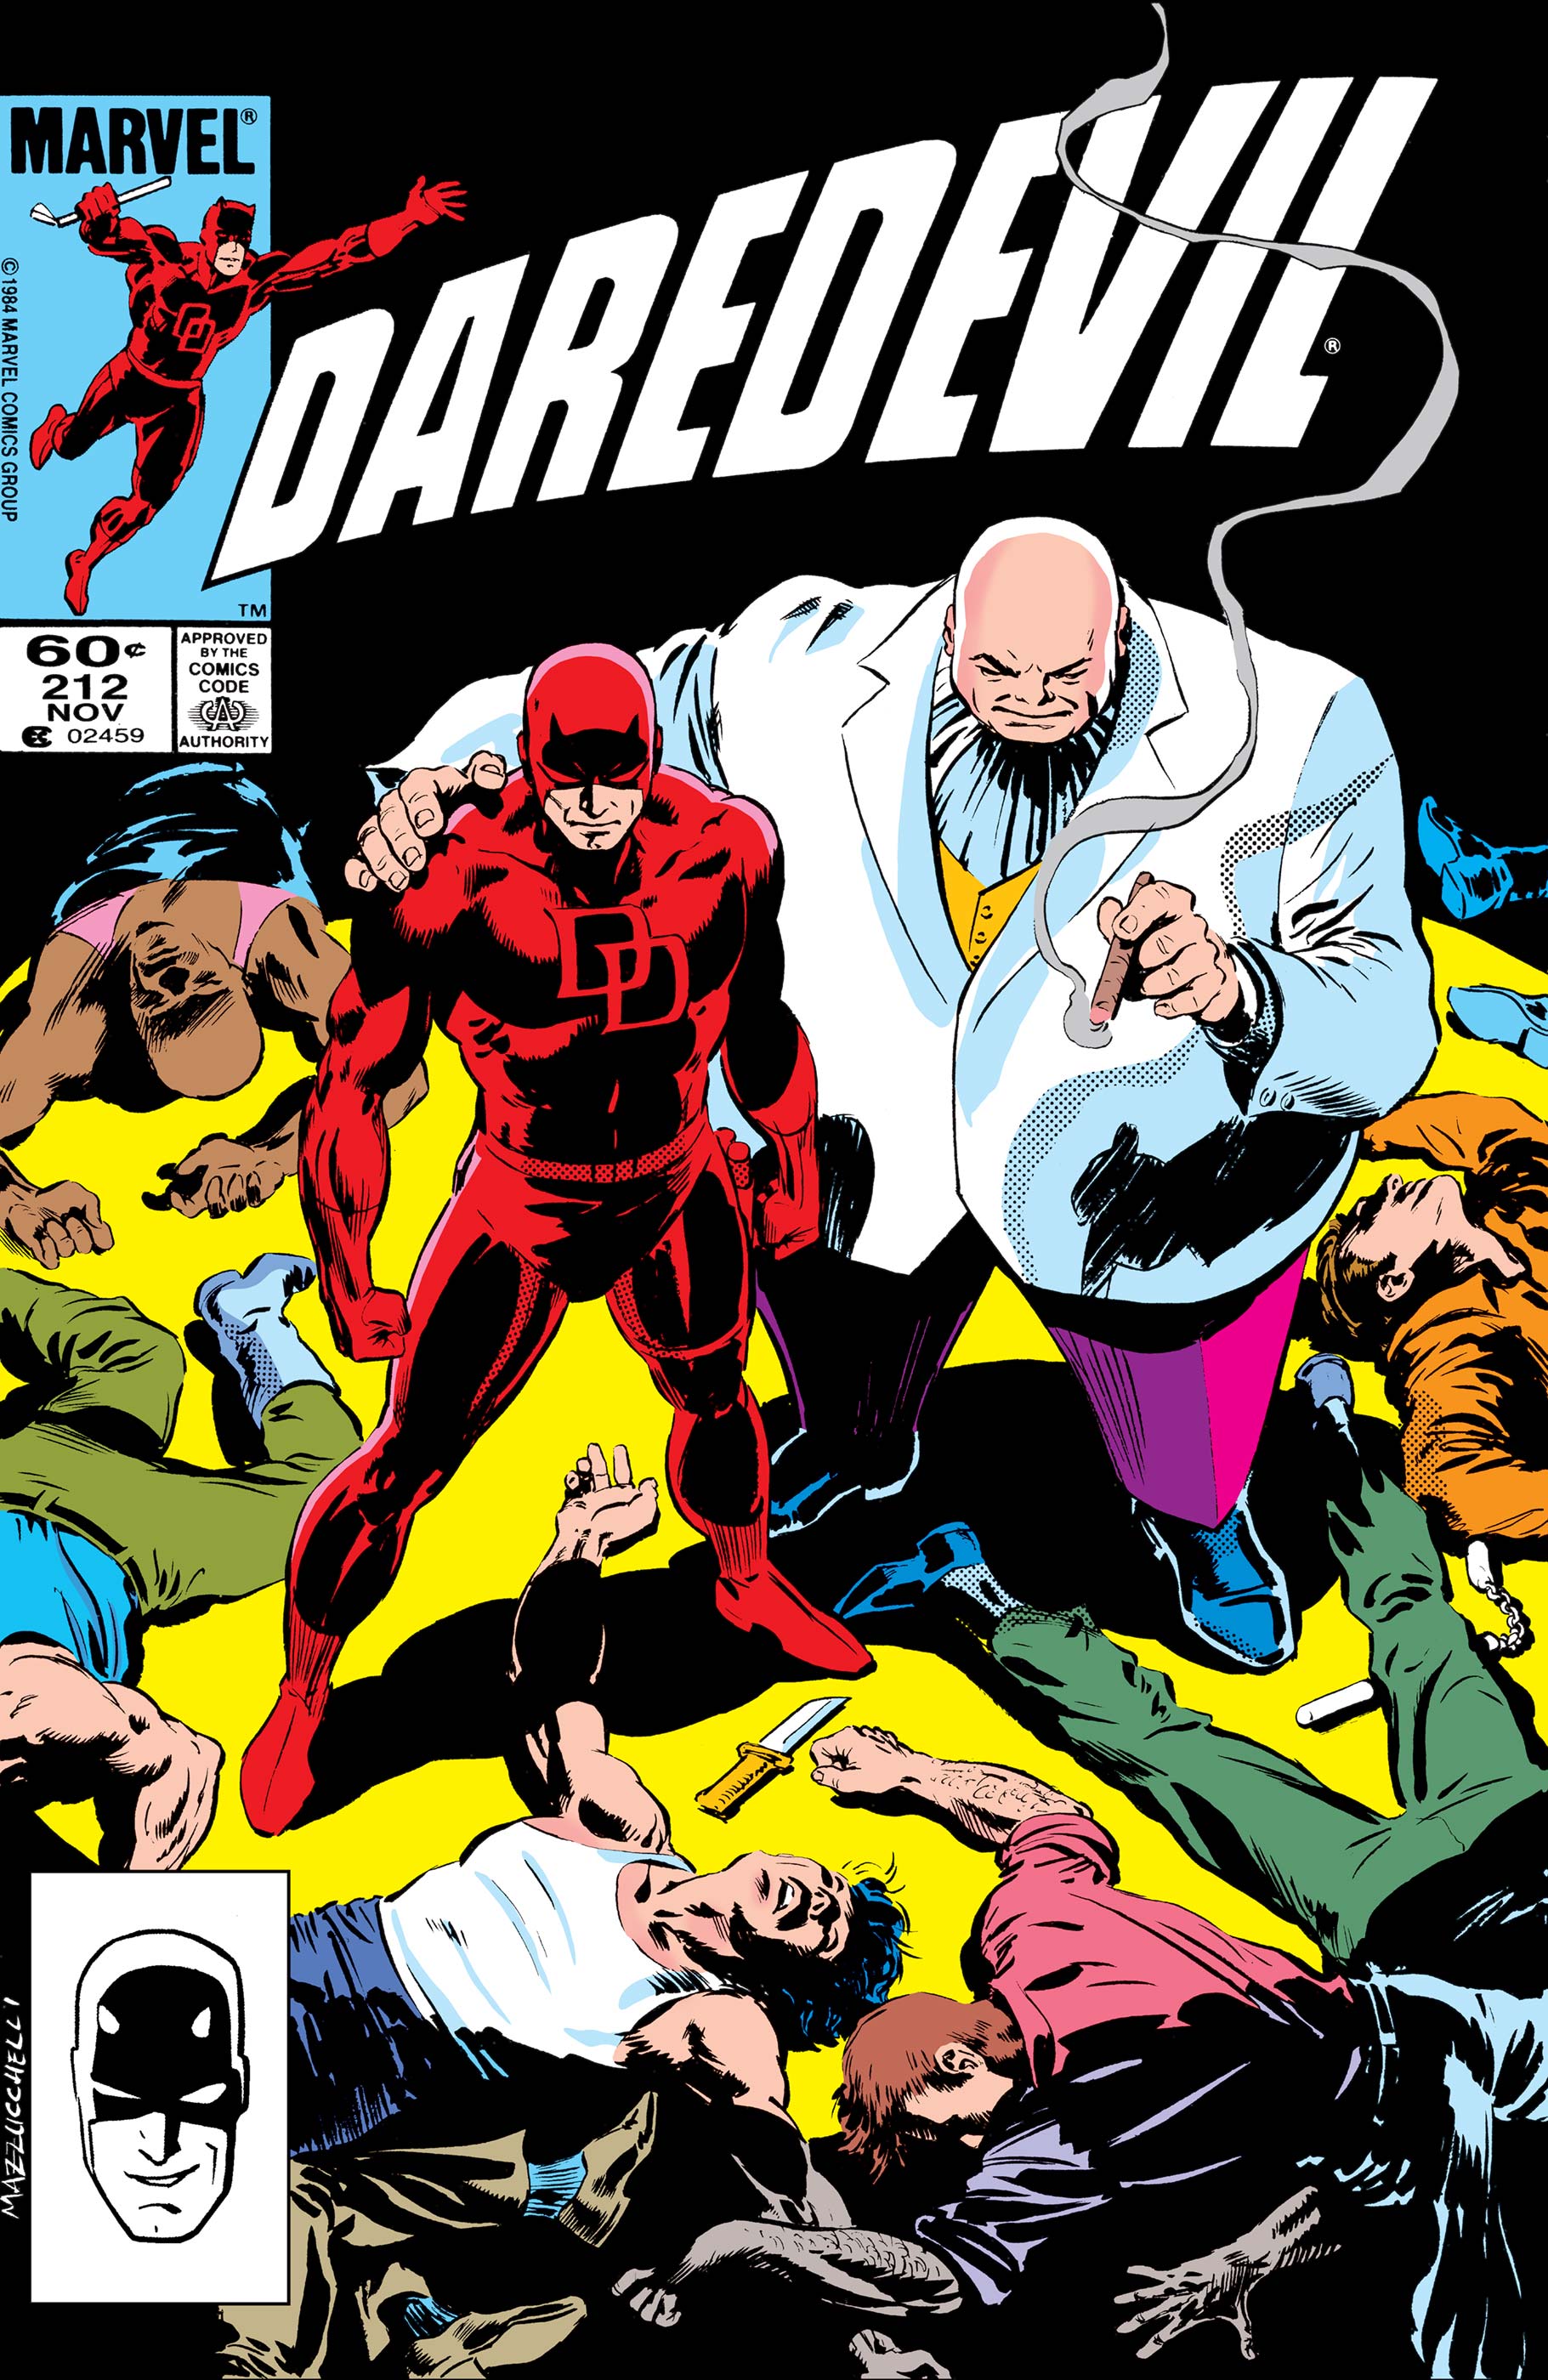 Daredevil (1964) #212